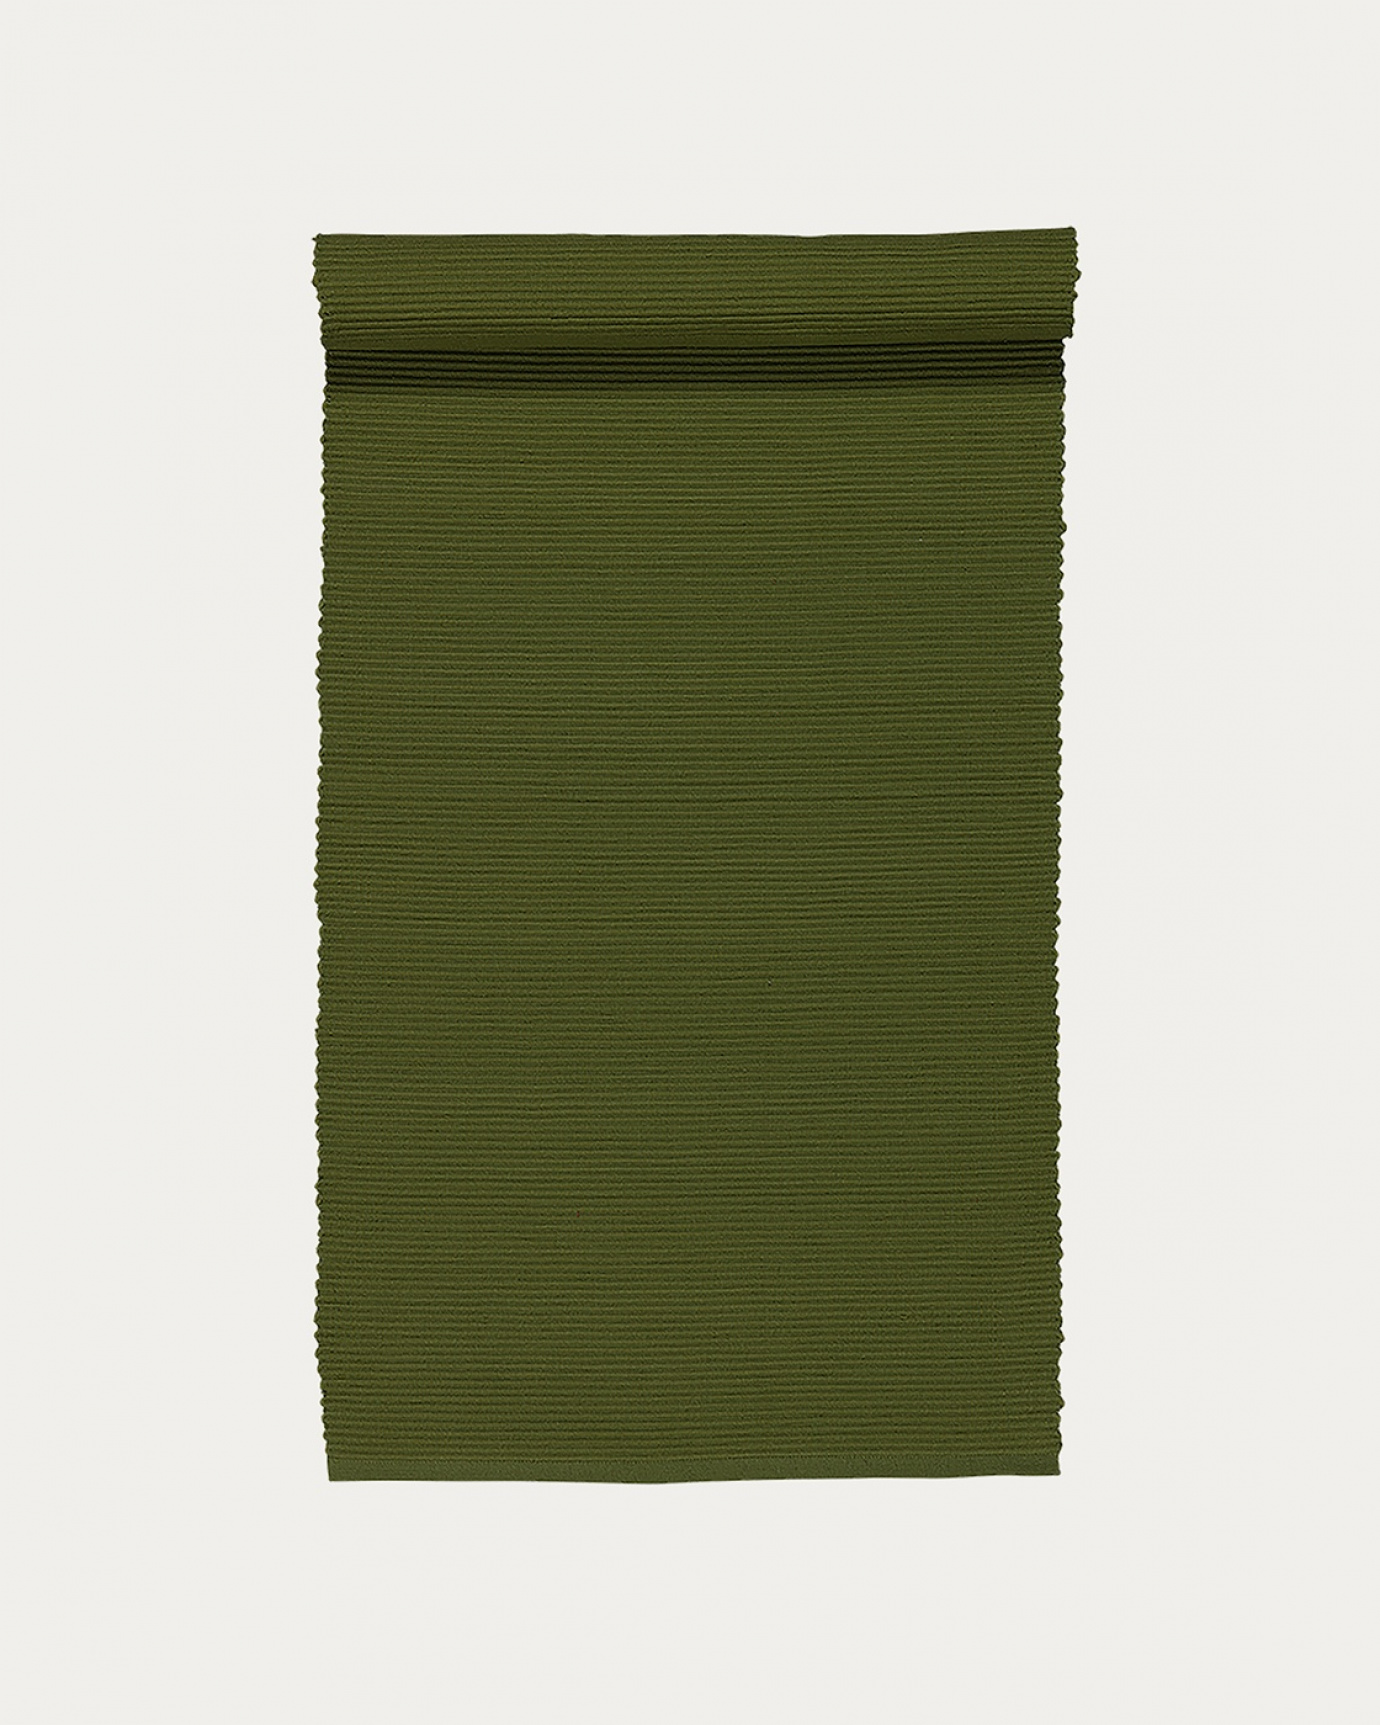 Image du produit chemin de table UNI vert olive foncé en coton doux de qualité côtelée de LINUM DESIGN. Taille 45 x 150 cm.